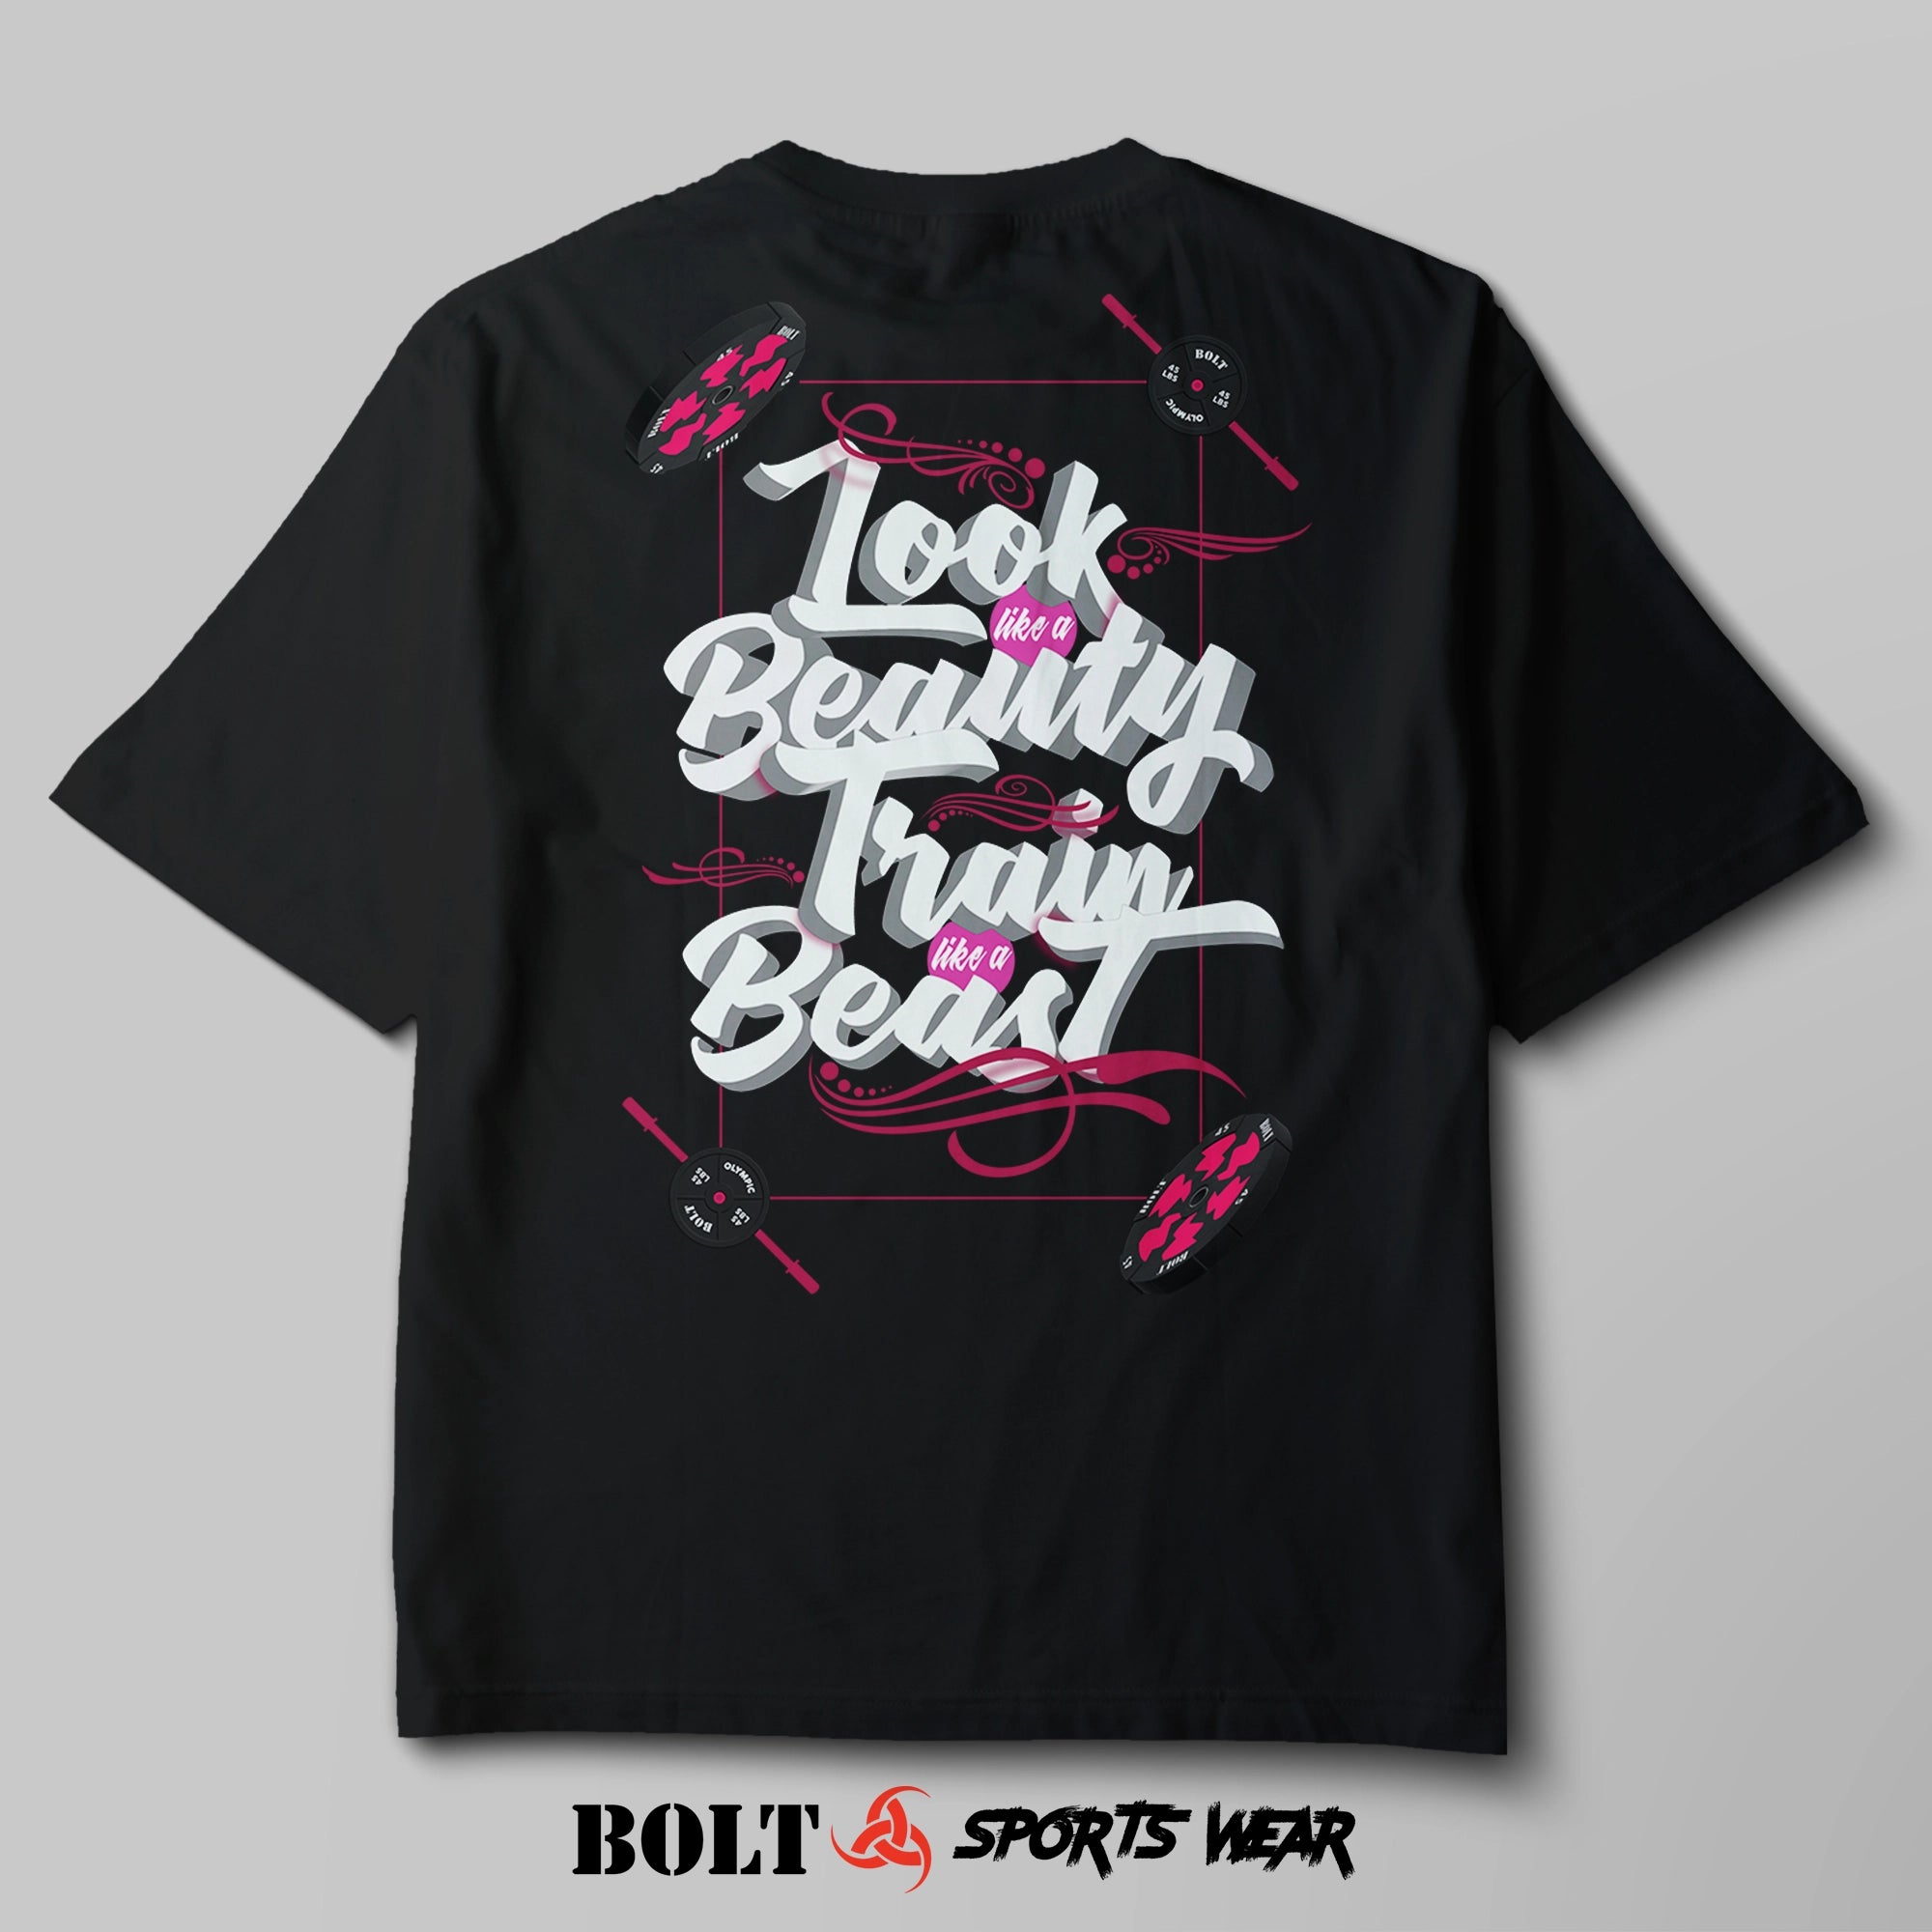 Bolt Sports Wear | Look Like a Beauty Train Like a Beast- Graphic Tee on Shaka Wear